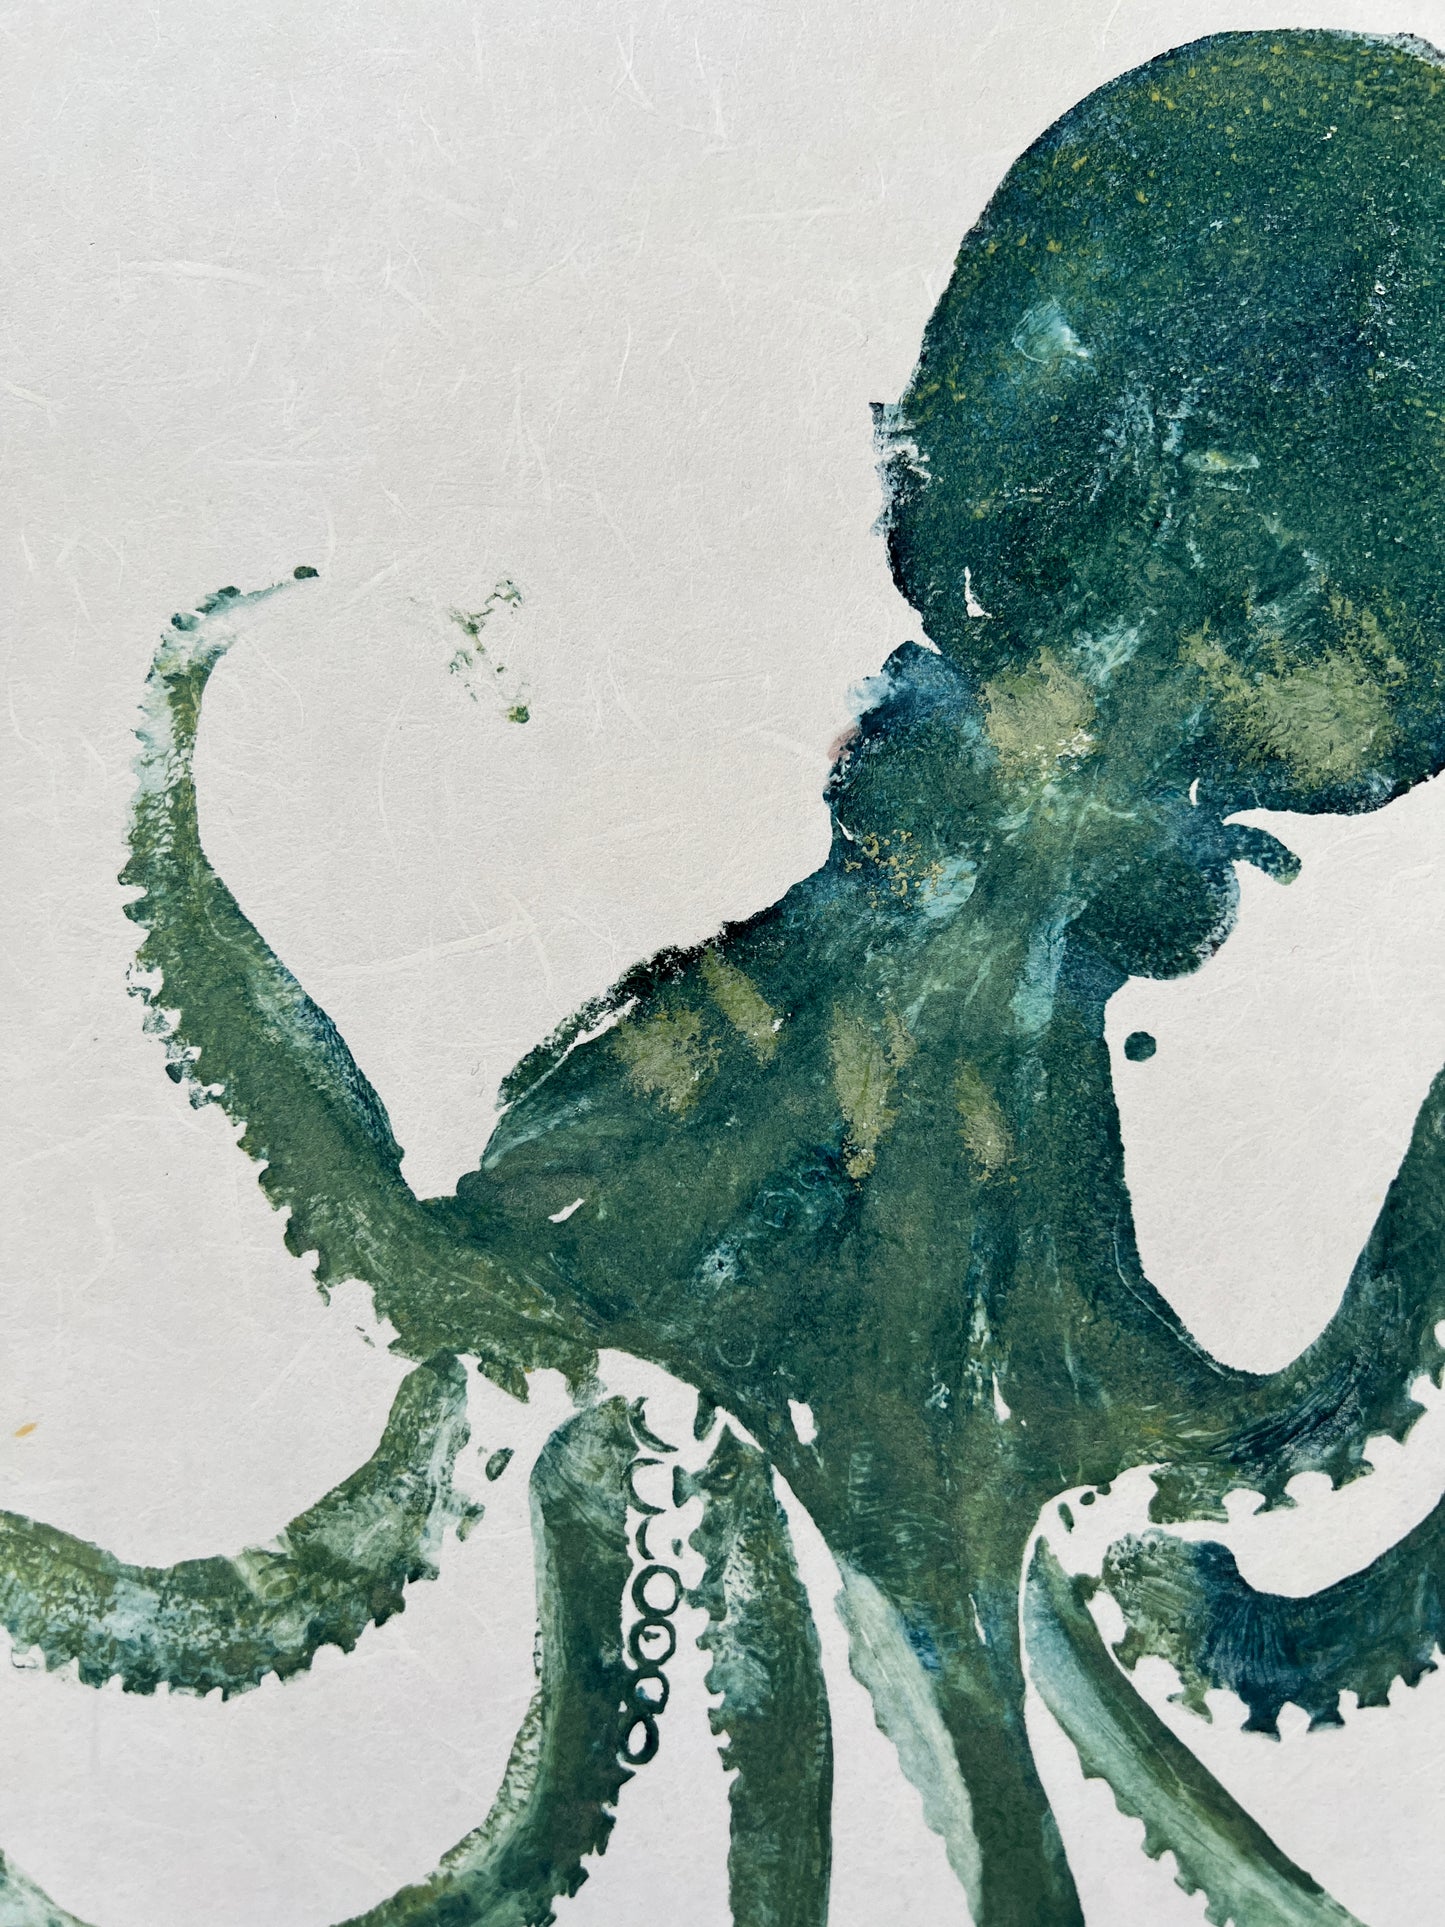 Octopus Gyotaku Printed and Wet Mounted.